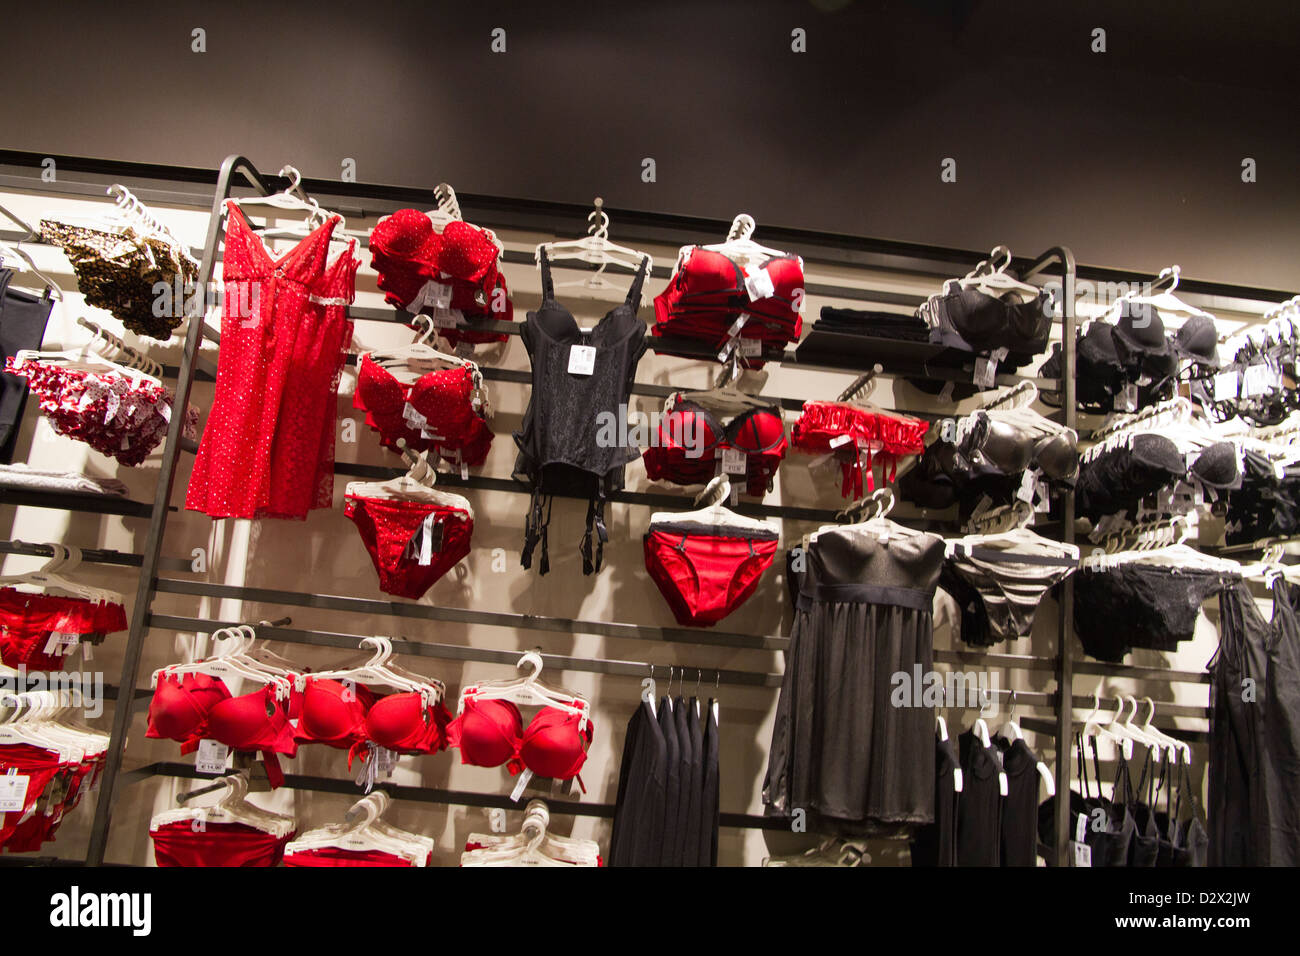 Tezenis negozio di intimo donna lingerie rosso Foto stock - Alamy